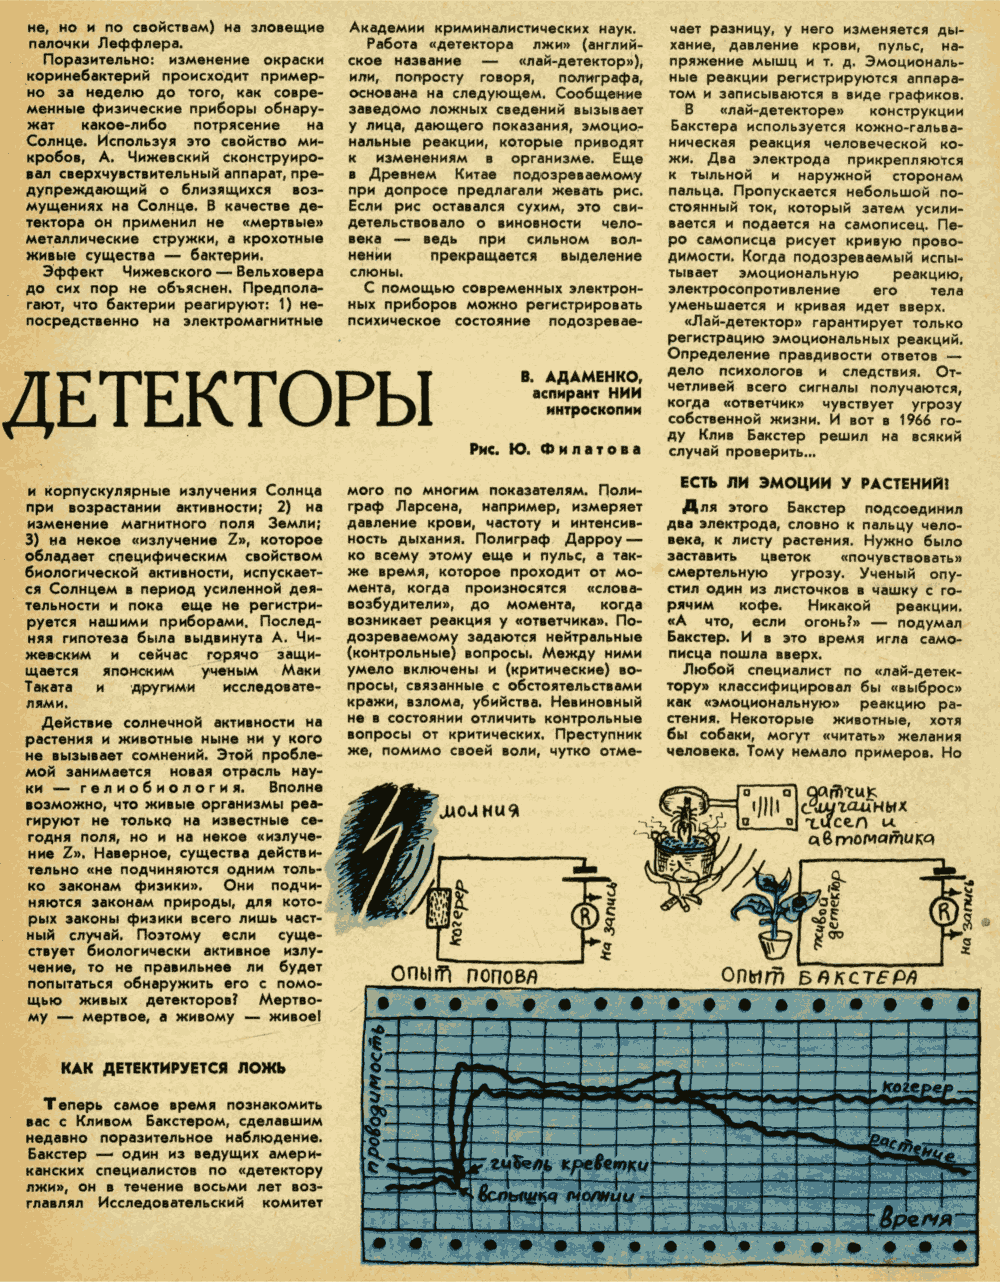 Живые детекторы. В. Адаменко. Техника — Молодёжи, 1970, №8, с.60-62. Фотокопия №2